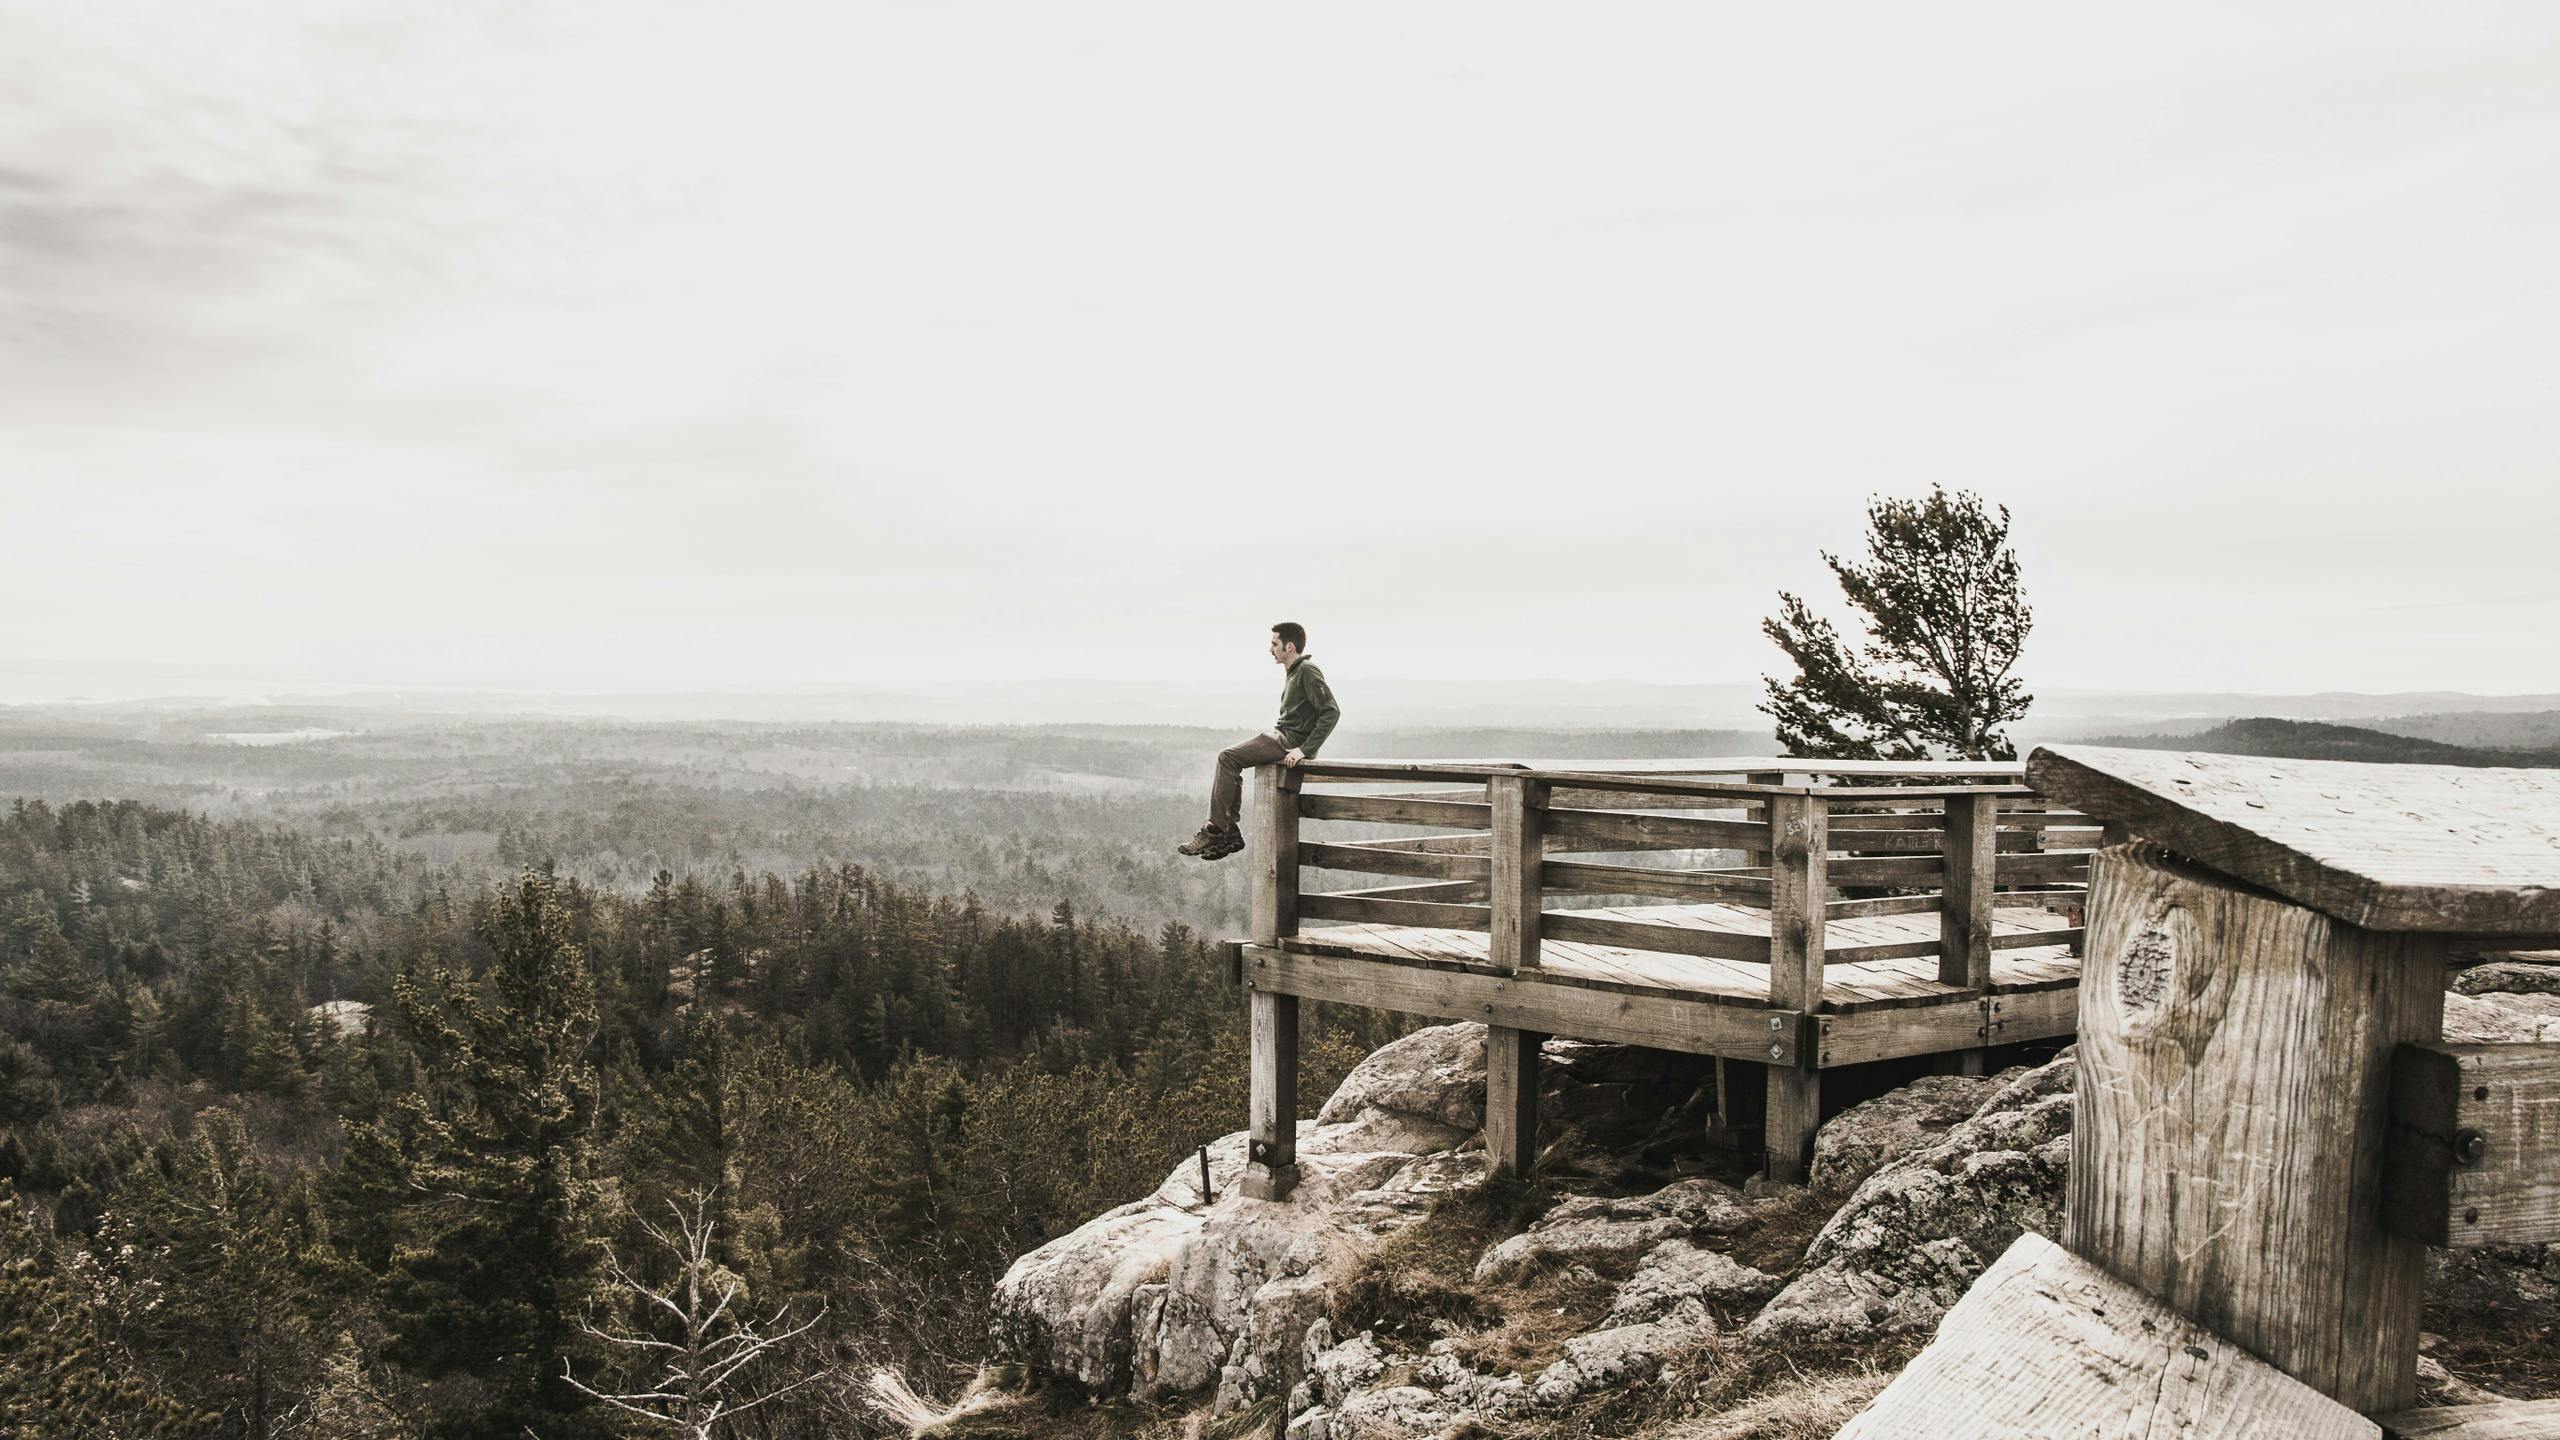 Man sitting on deck overlooking mountain